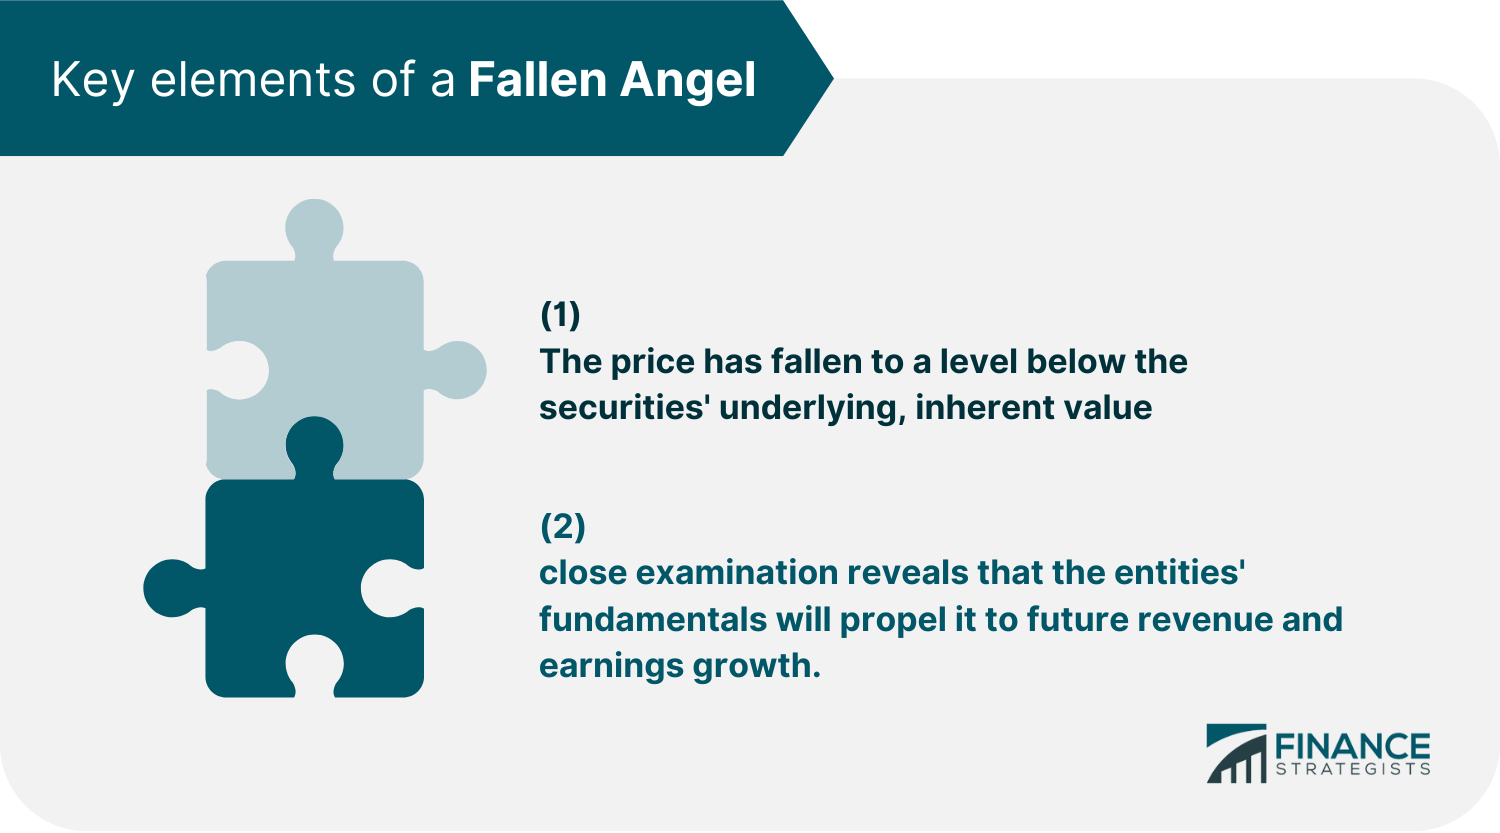 Key elements of a Fallen Angel